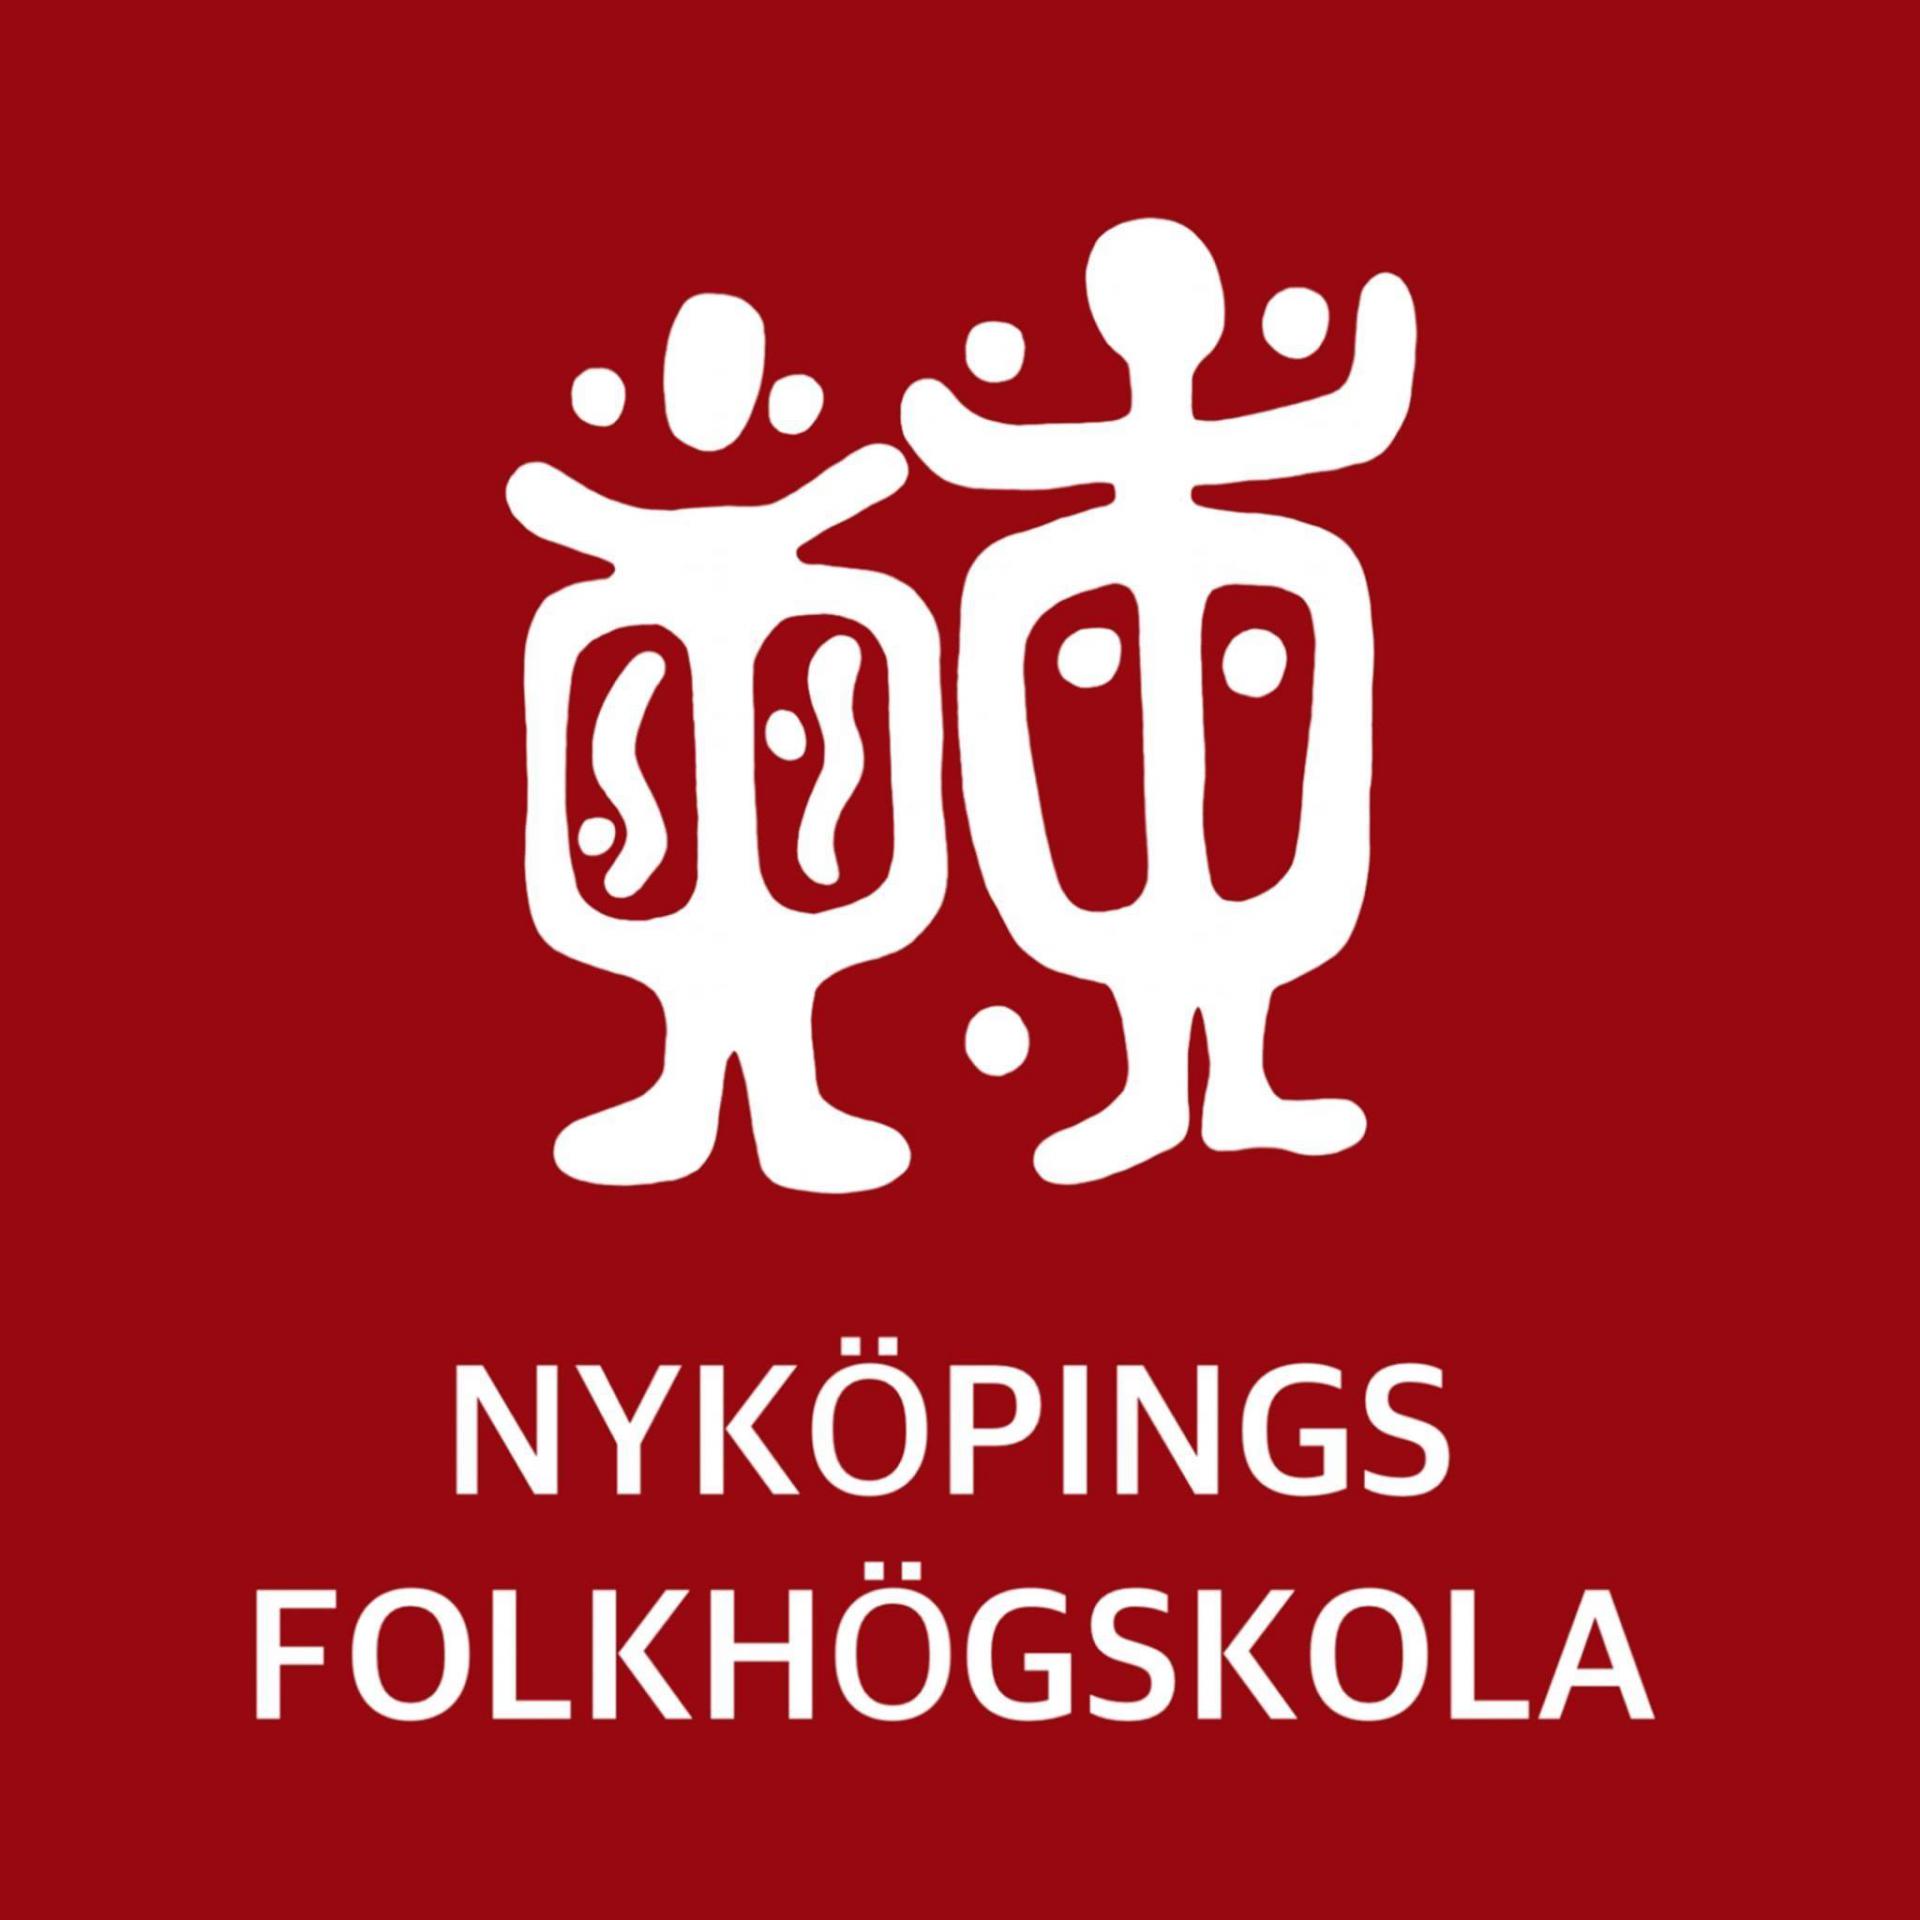 Föreningen Nyköpings folkhögskola